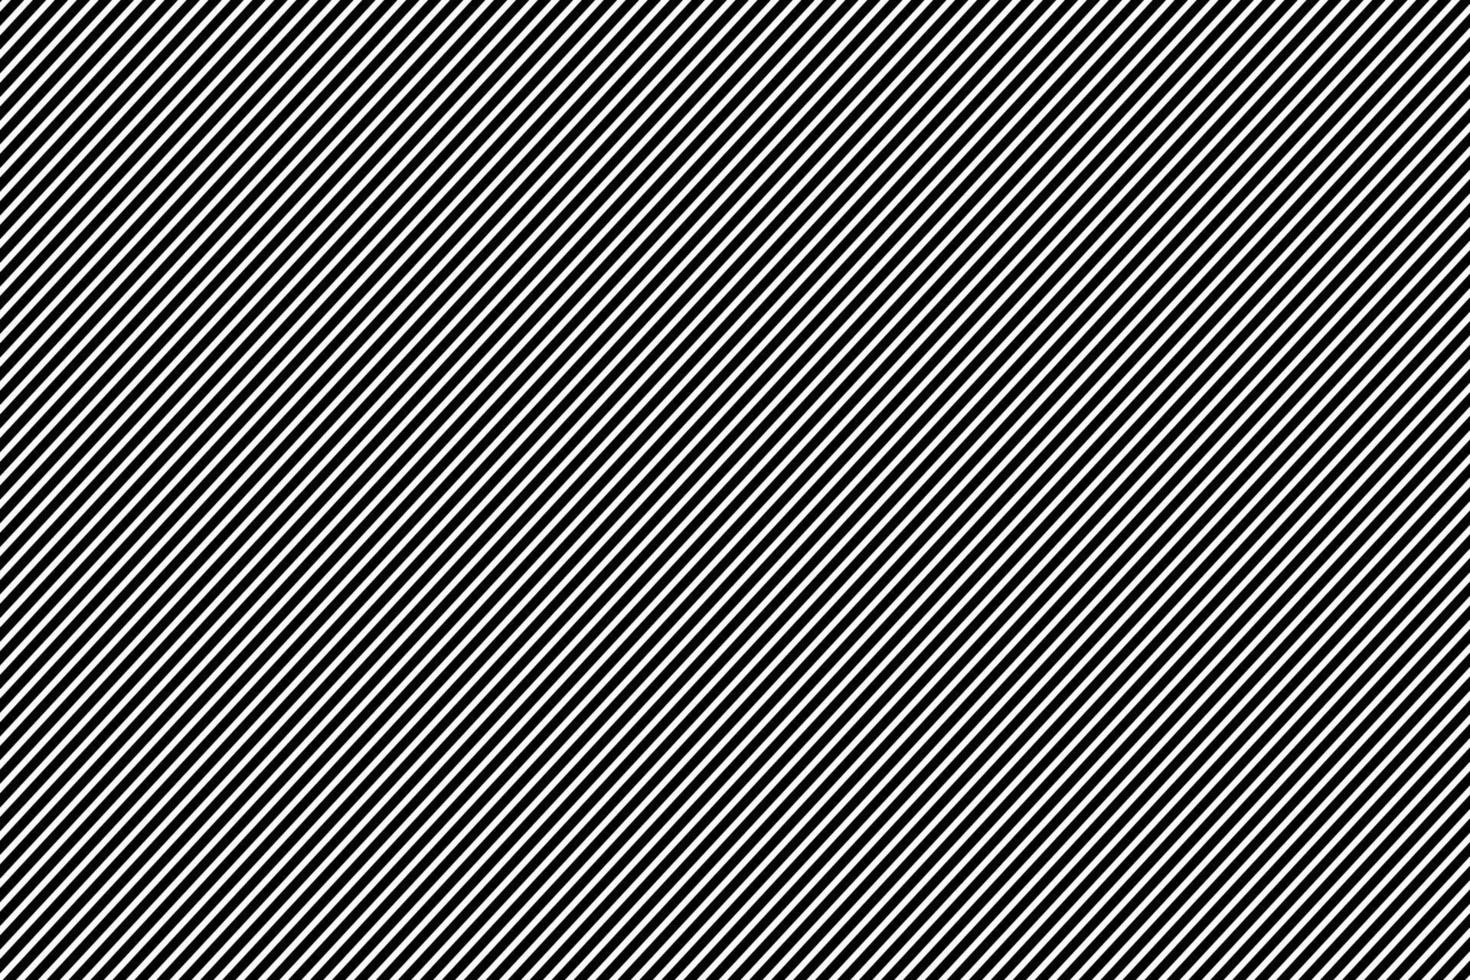 Hintergrundbild aus dünnen schwarzen Streifen. Diagonal angeordnet, Vektorillustration. vektor